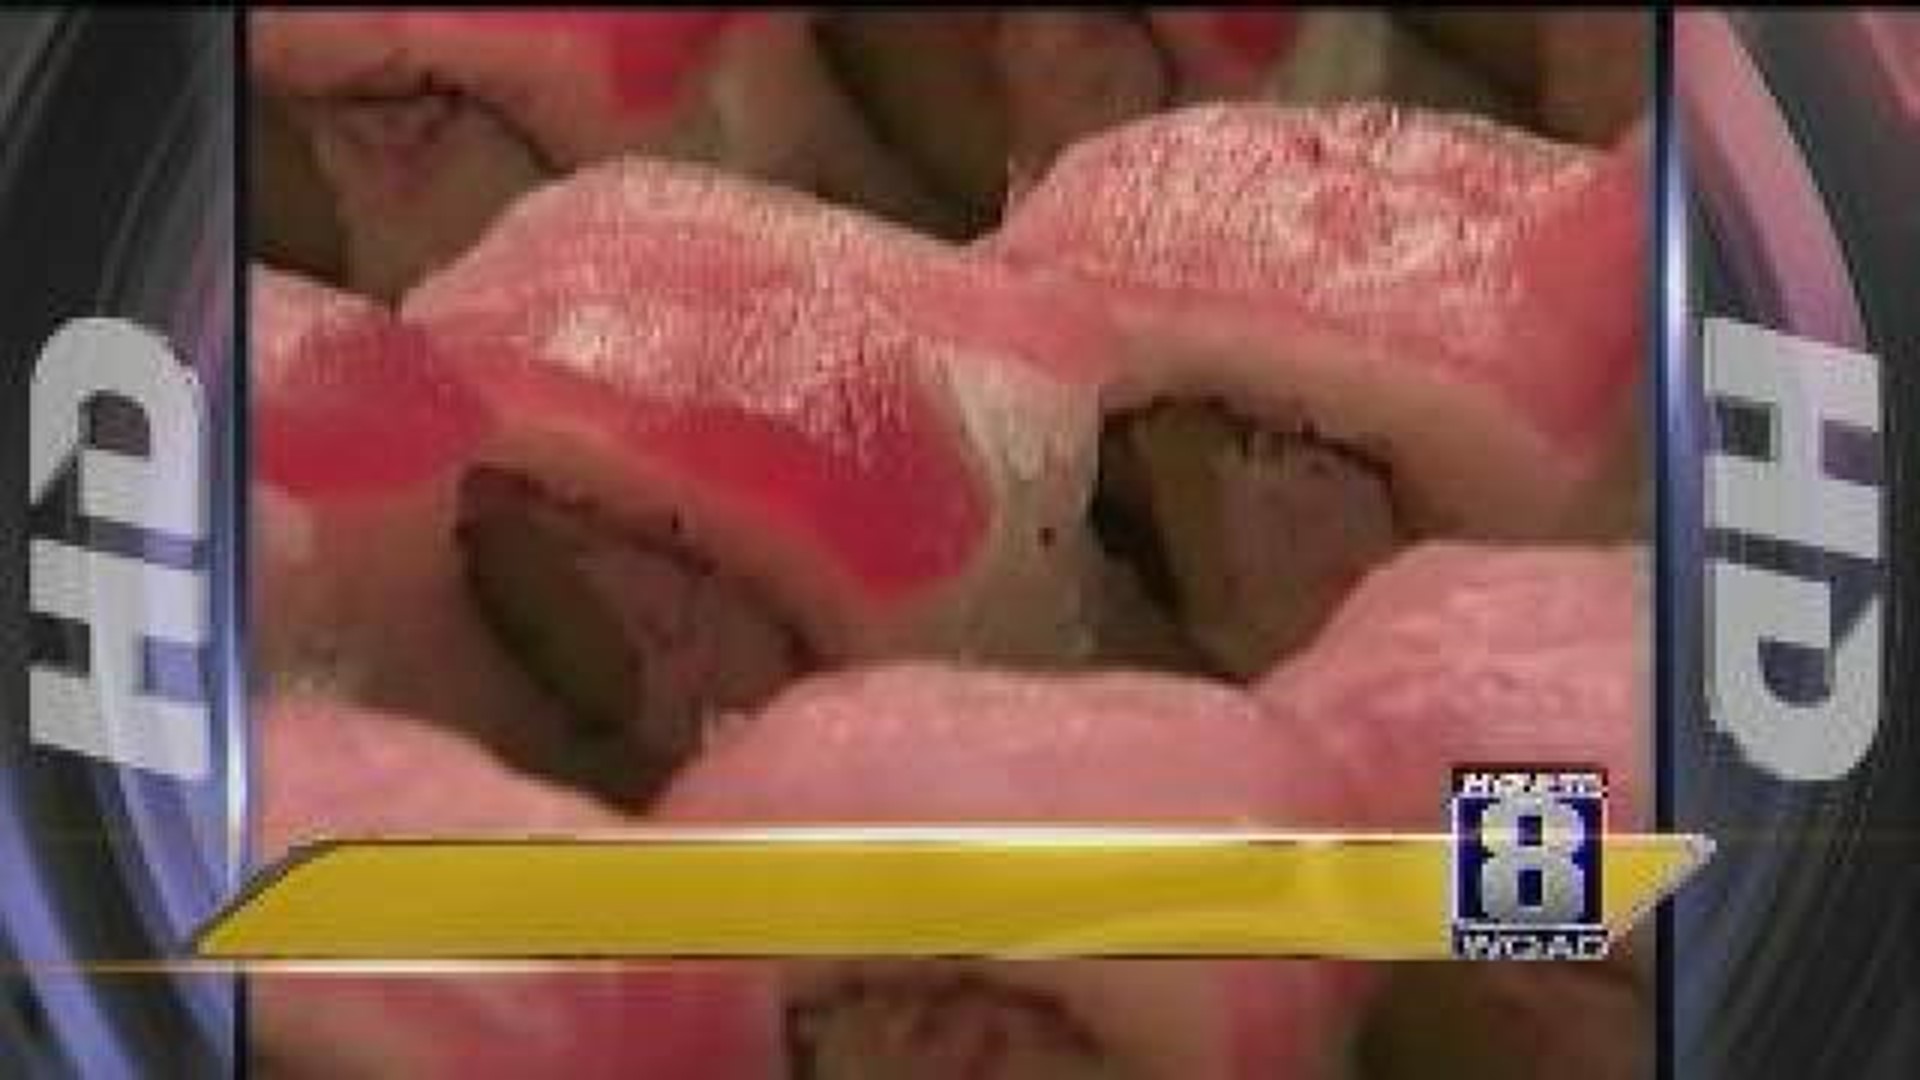 Some blame sushi for salmonella outbreak